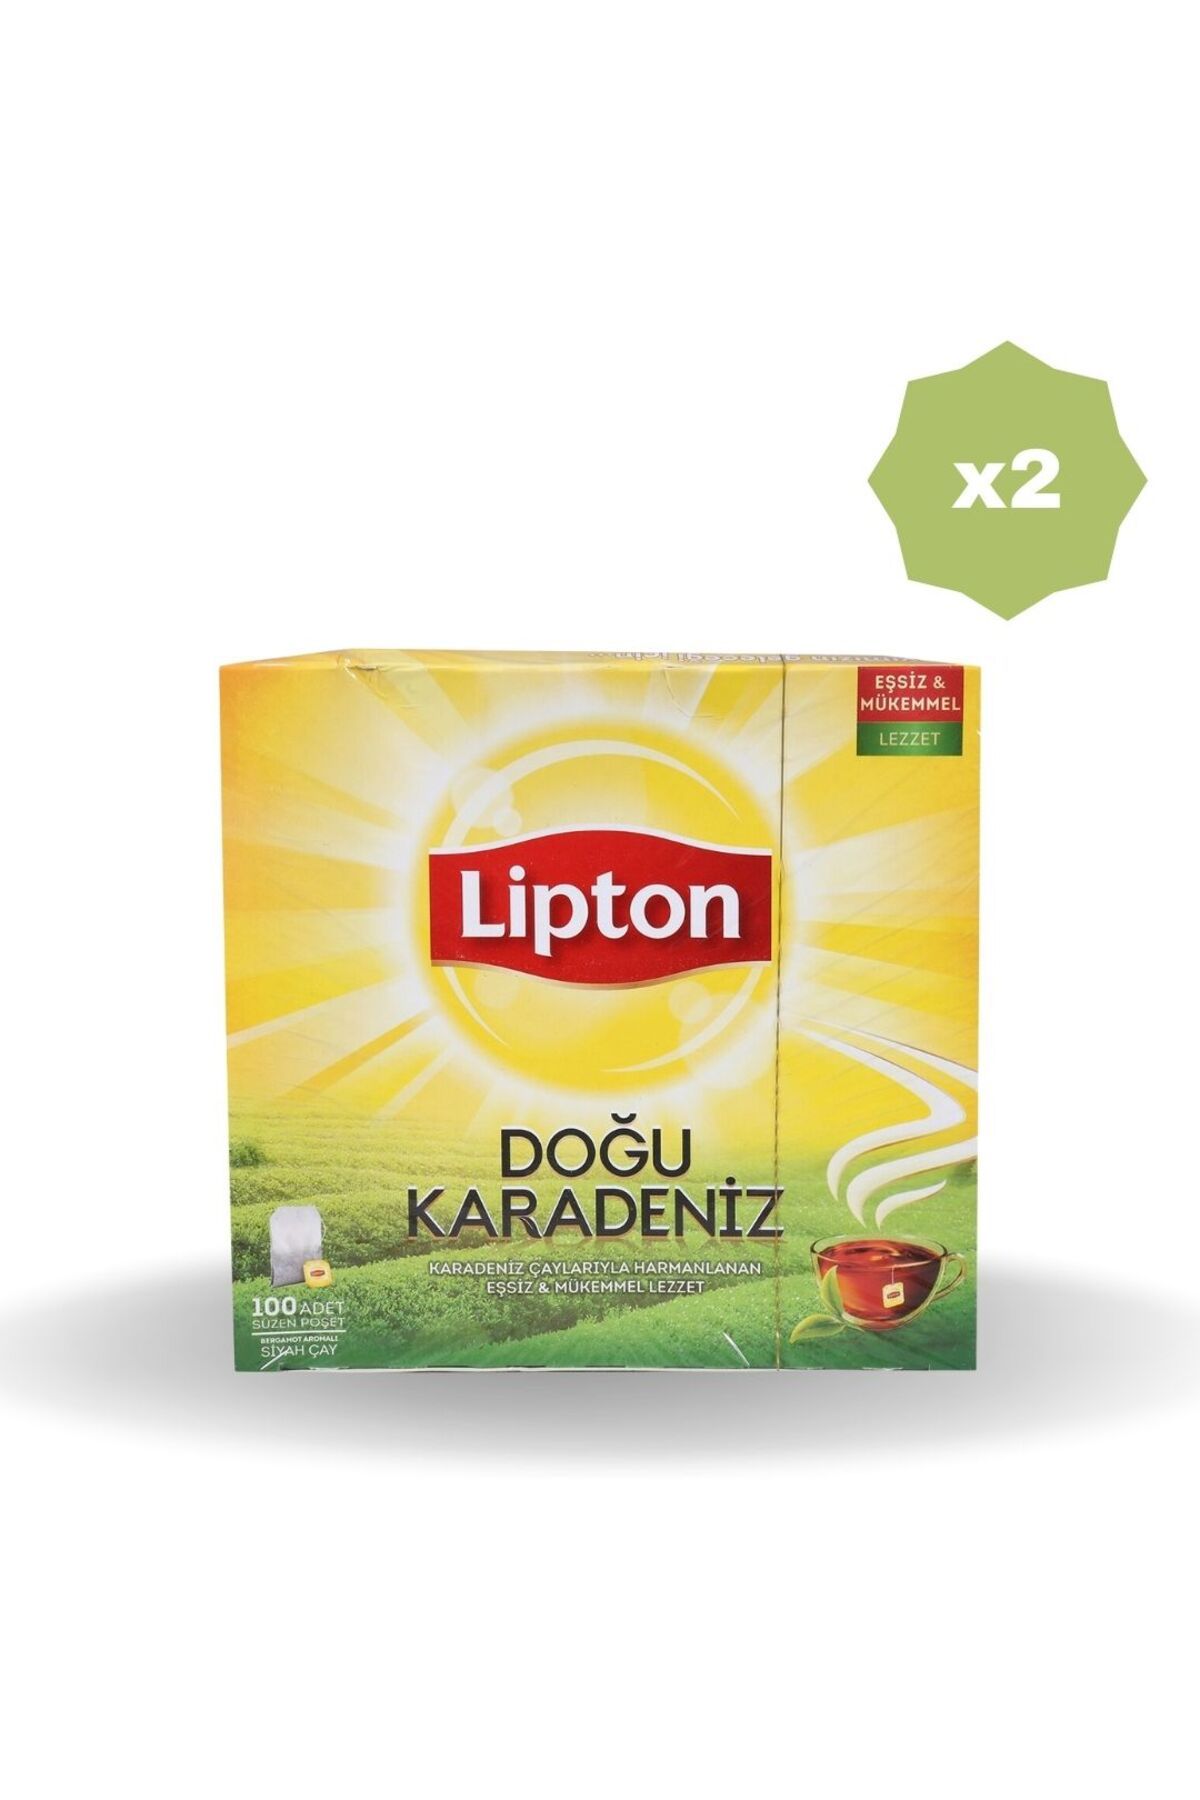 Lipton LİPTON DOĞU KARADENİZ BARDAK POŞET 100'LÜ X 2 ADET